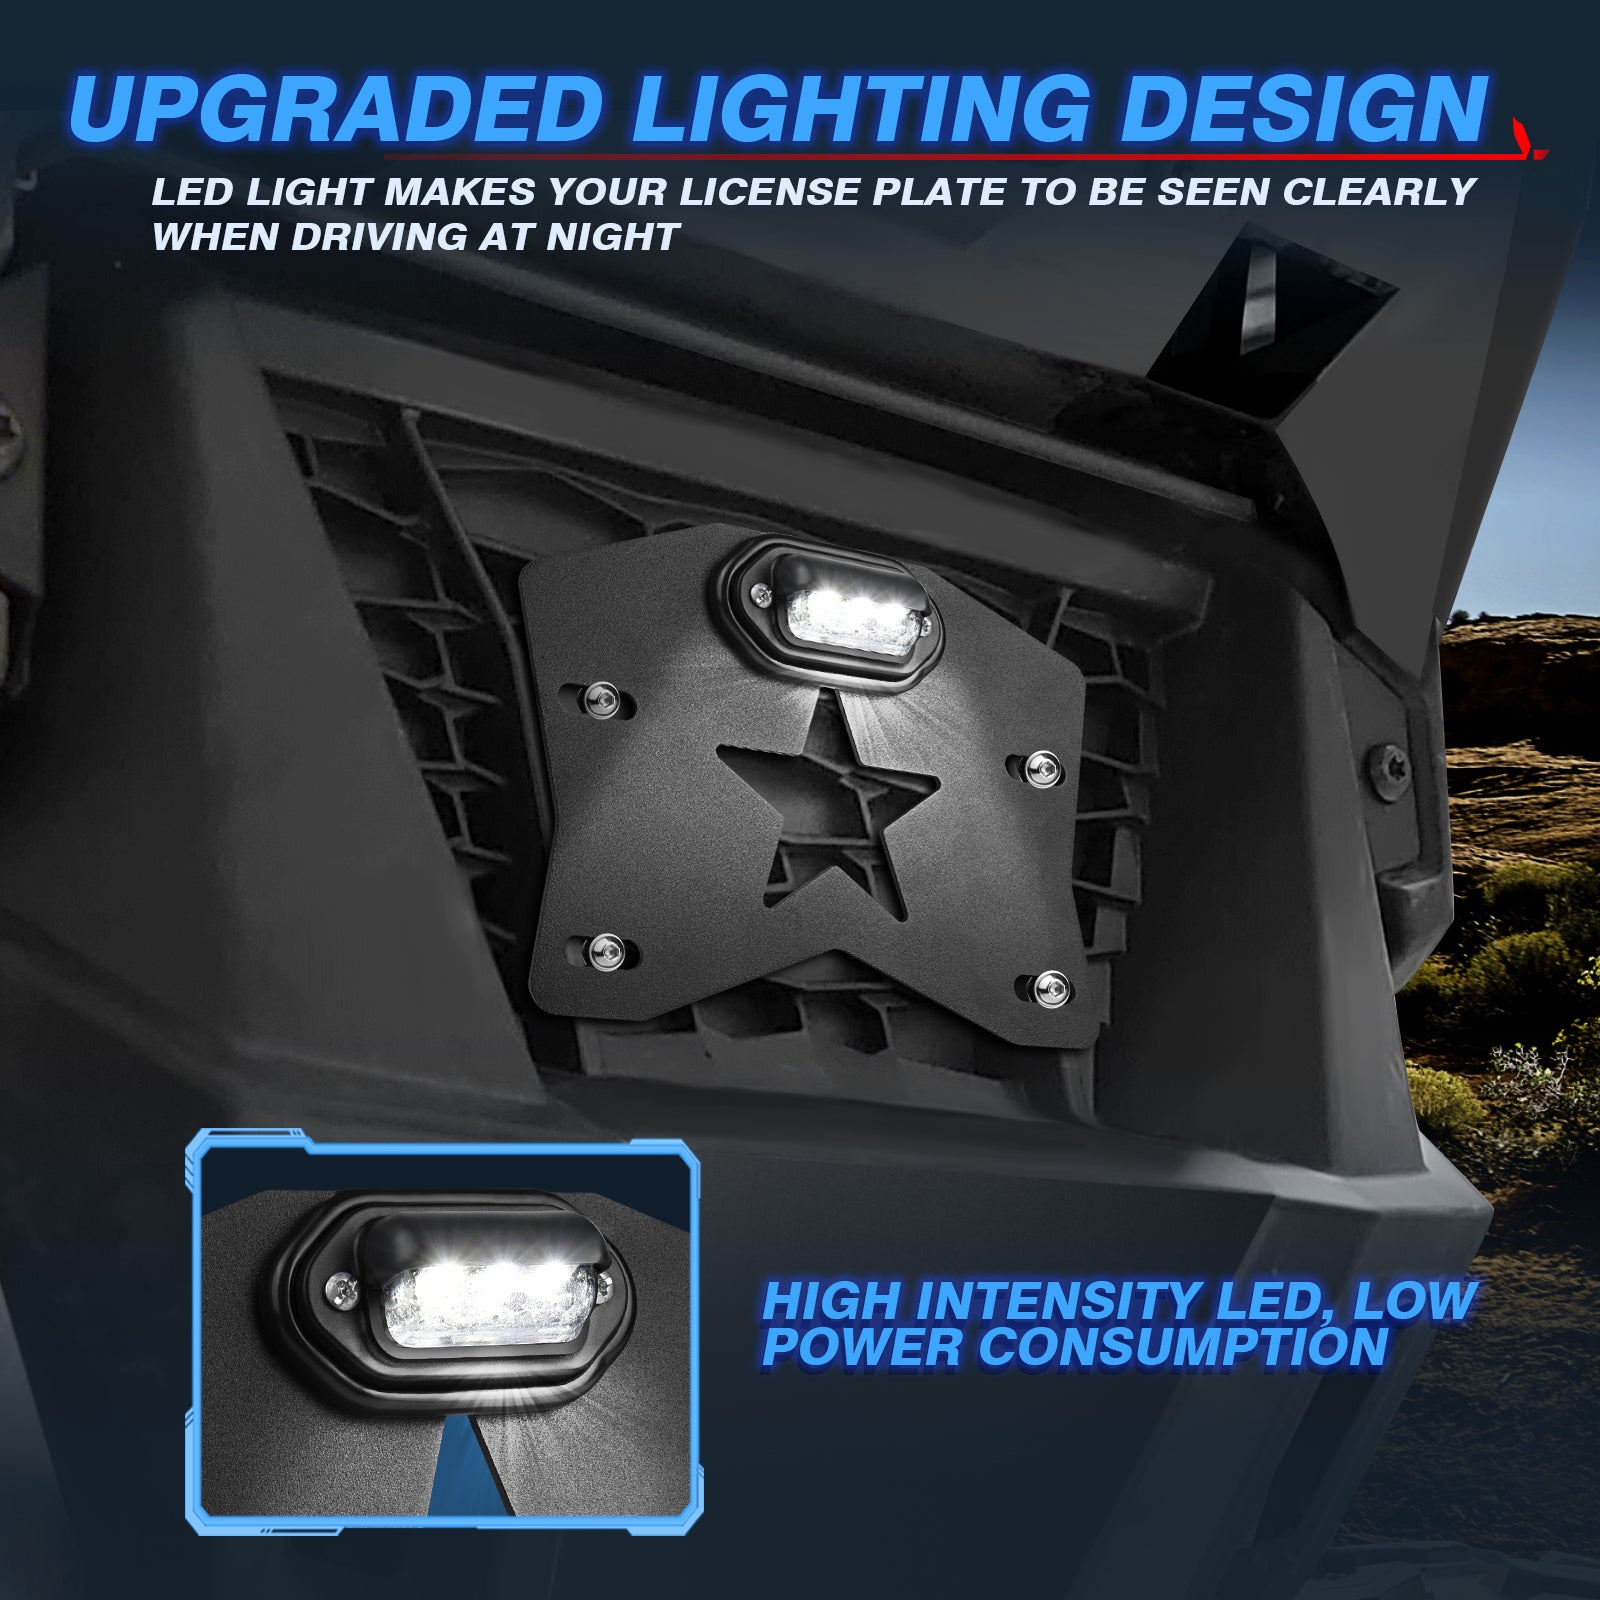 MICTUNING UTV License Plate Frame Holder with LED Light - Aluminium License Plate Bracket Kit